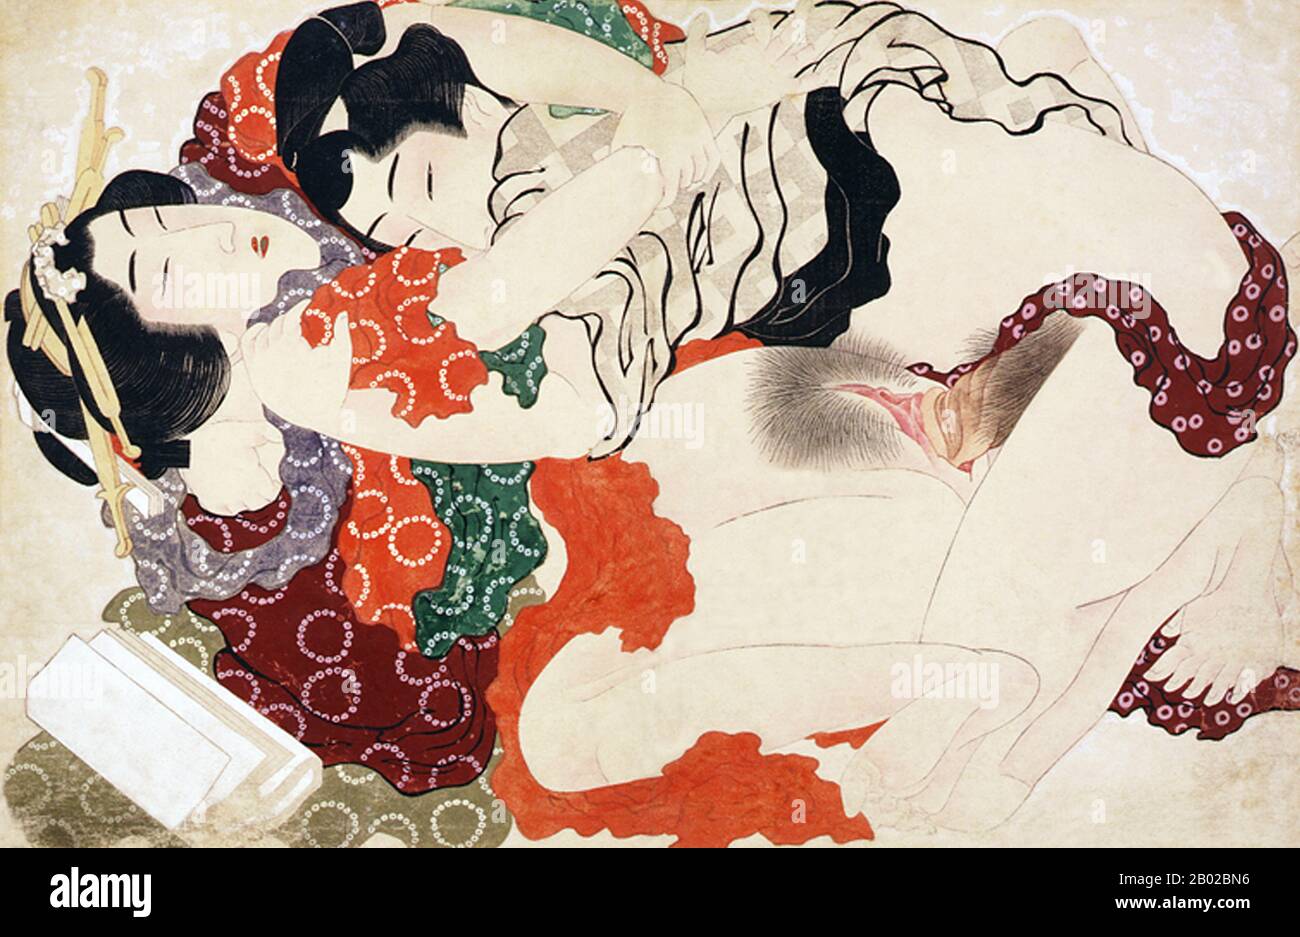 Katsushika Hokusai (葛飾 北斎, 31. Oktober 1760 - 10. Mai 1849) war ein japanischer Künstler, Ukiyo-e-Maler und Druckereimacher der Edo-Zeit. Er wurde von Malern wie Sesshu und anderen Stilen der chinesischen Malerei beeinflusst. Hokusai wurde in Edo (heute Tokio) geboren und ist am bekanntesten als Autor der Holzschnittdruckserie Sechsunddreißig Ansichten des Fuji (富嶽三十六景 Fugaku Sanjūroku-kei, c Im Jahre 1820er Jahre entstand Die Große Welle vor Kanagawa, die den international anerkannten Druck umfasst. Hokusai schuf die "Thirty-Six-Ansichten" sowohl als Antwort auf einen Boom bei Inlandsreisen als auch als Teil einer persönlichen Obssi Stockfoto